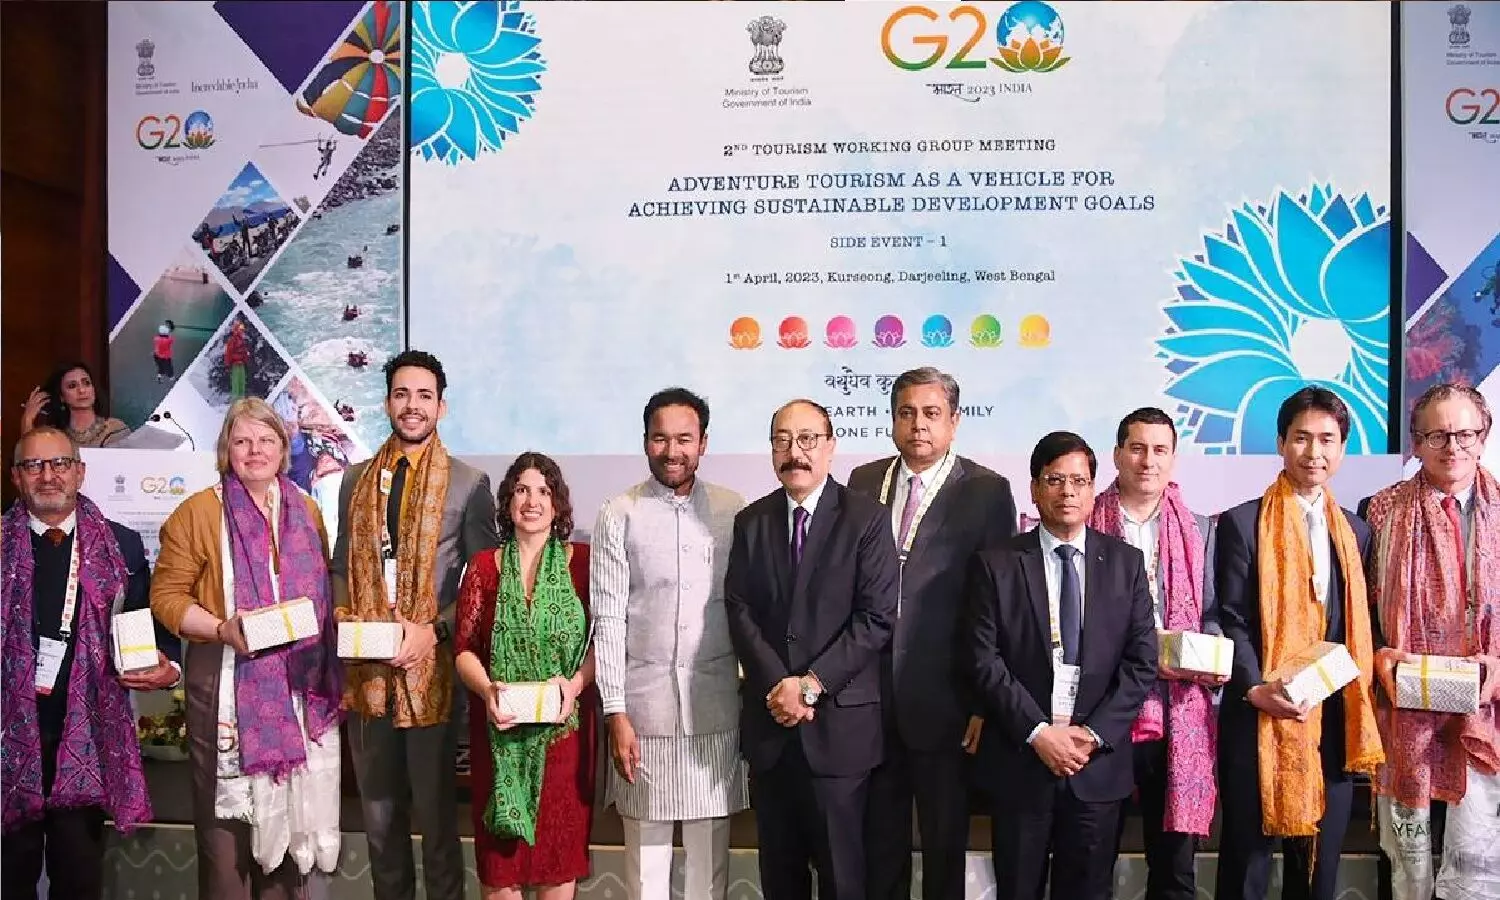 G20 Meeting Srinagar: श्रीनगर में G20 मीटिंग के लिए पहुंचे डेलीगेट्स, राम चरण के साथ नाटू-नाटू डांस भी किया, बैठक शुरू